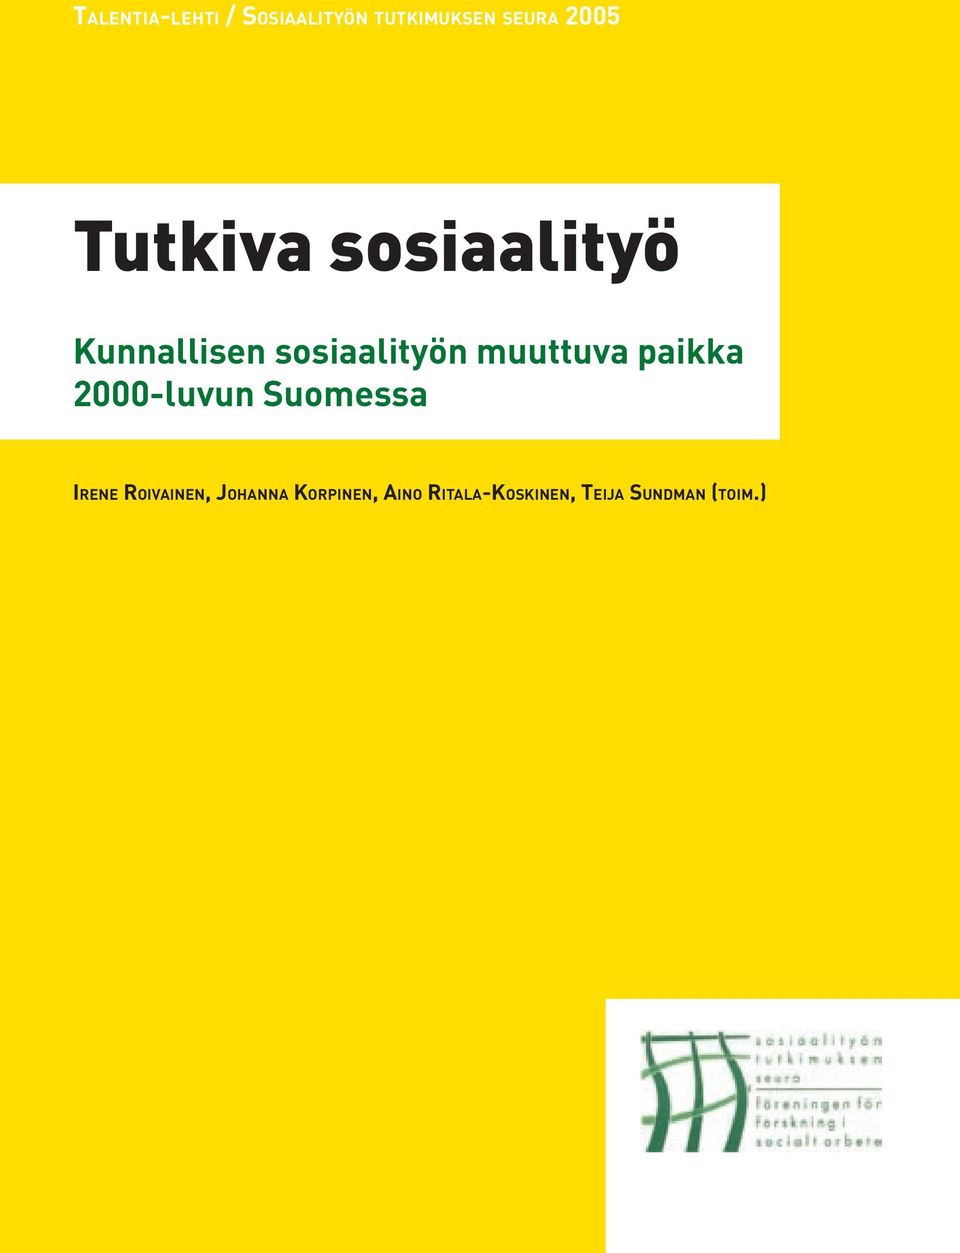 Kunnallisen sosiaalityön muuttuva paikka 2000-luvun Suomessa